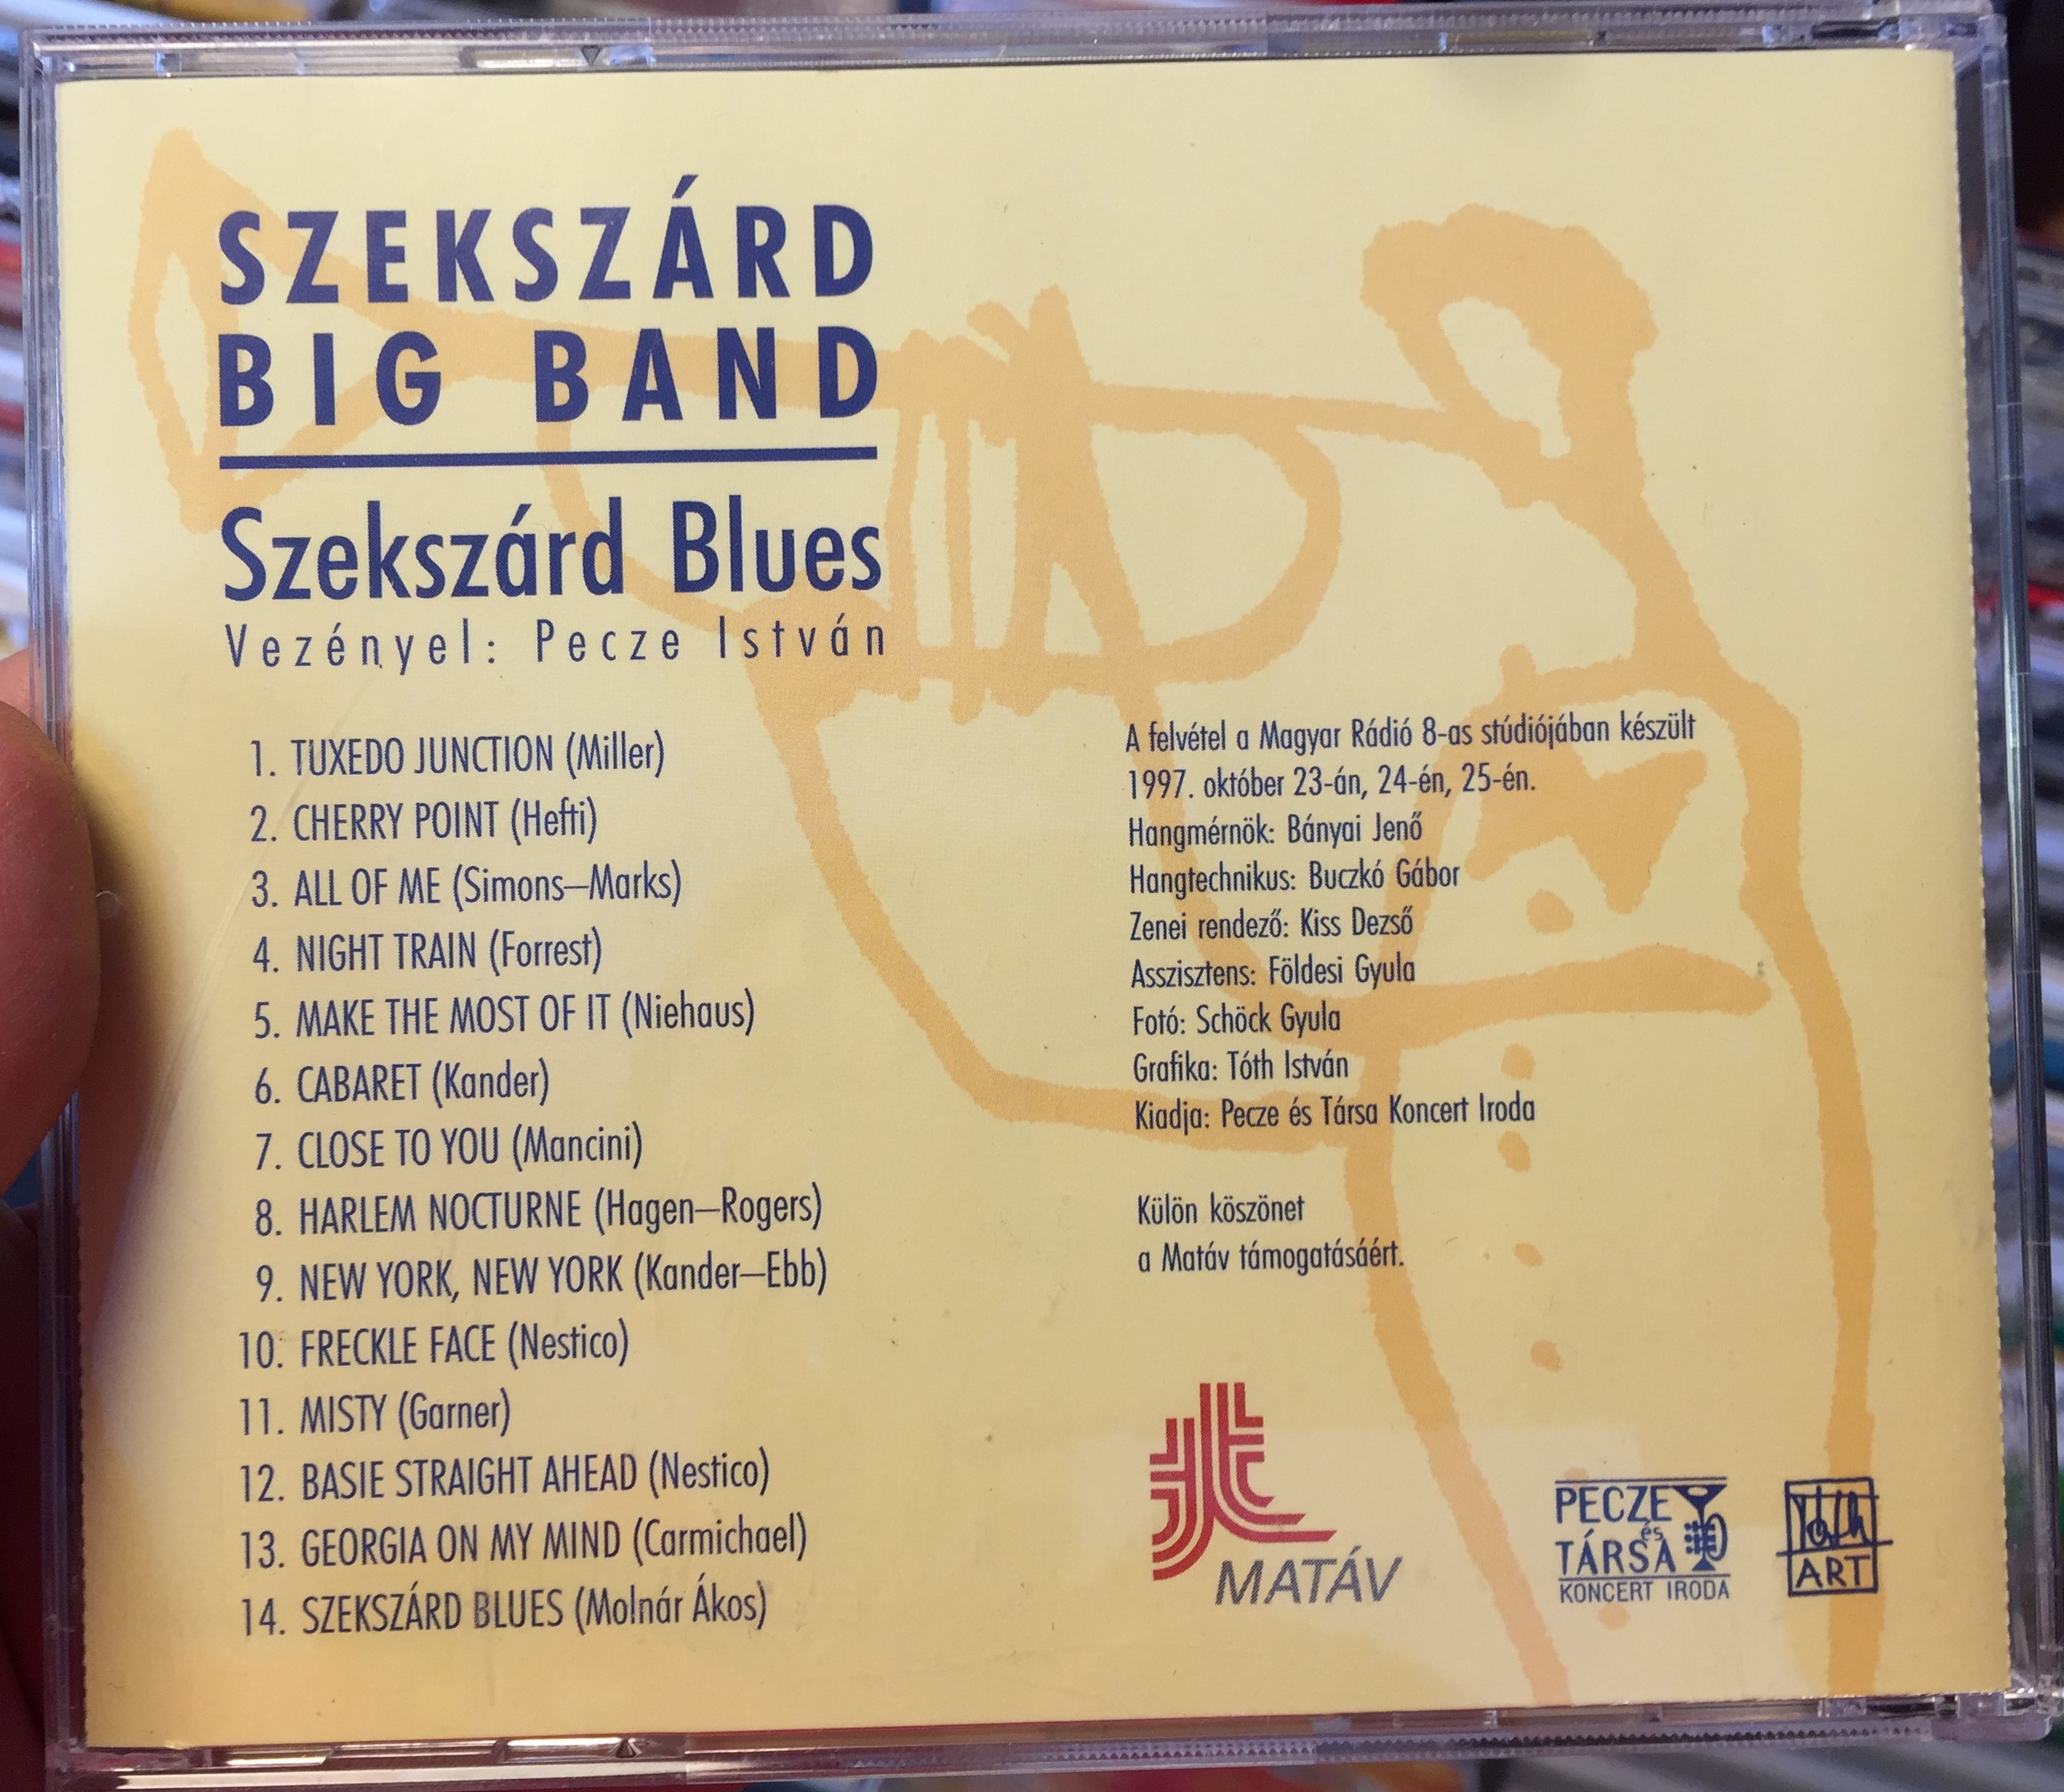 szekszard-blues-szekszard-big-band-matav-audio-cd-3-.jpg